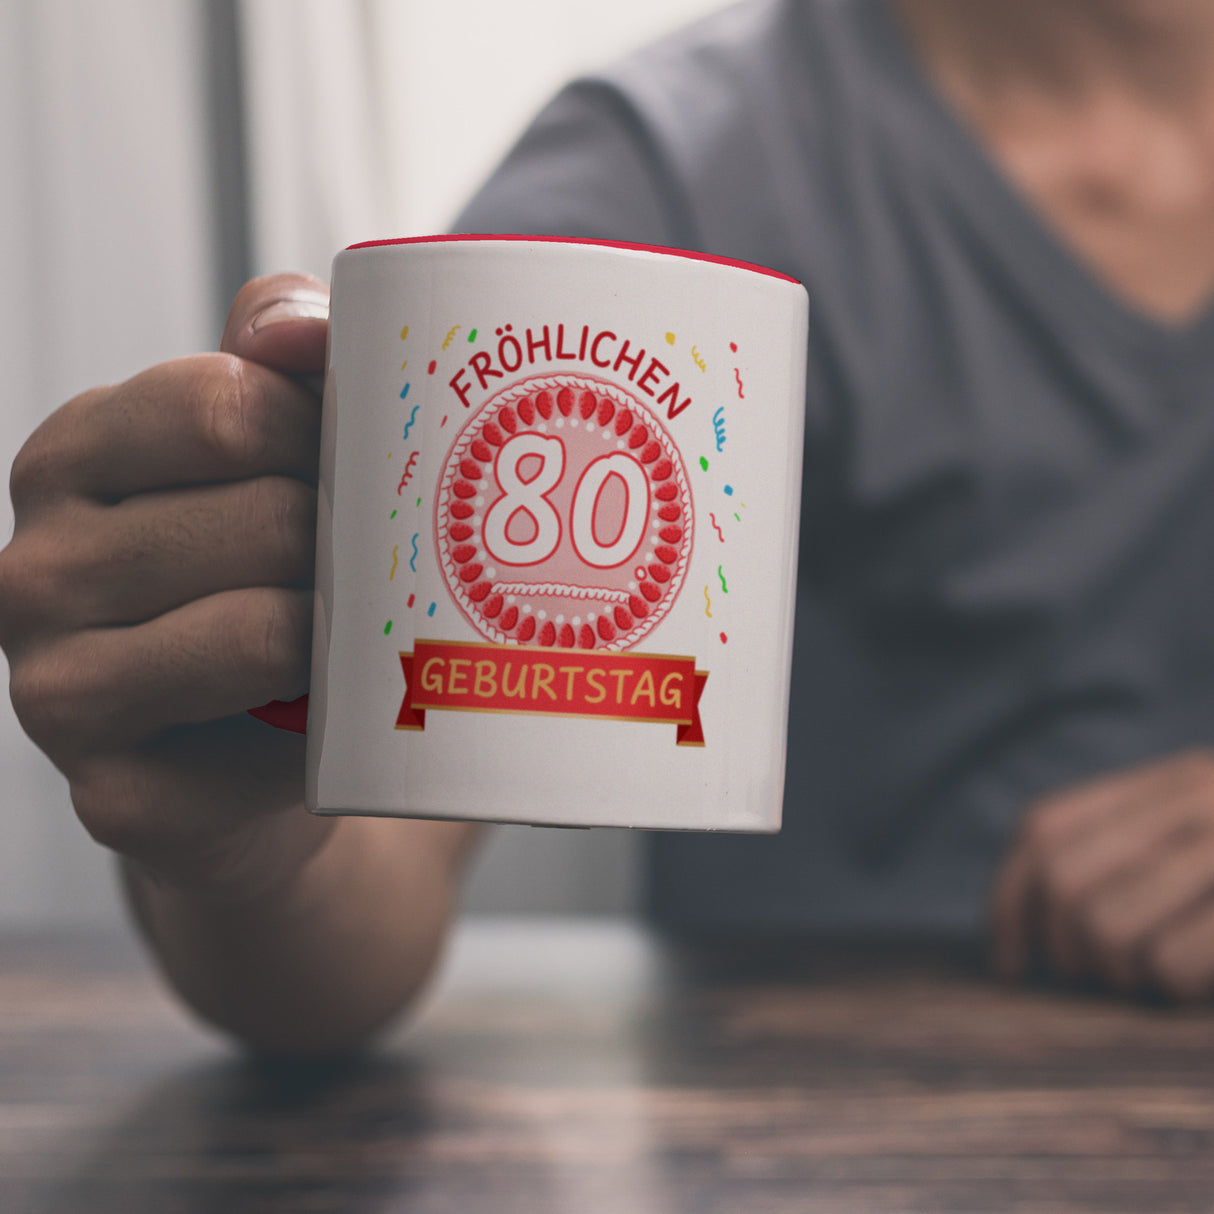 Witziger Kaffeebecher für den 80. Geburtstag mit Motiv: Torte